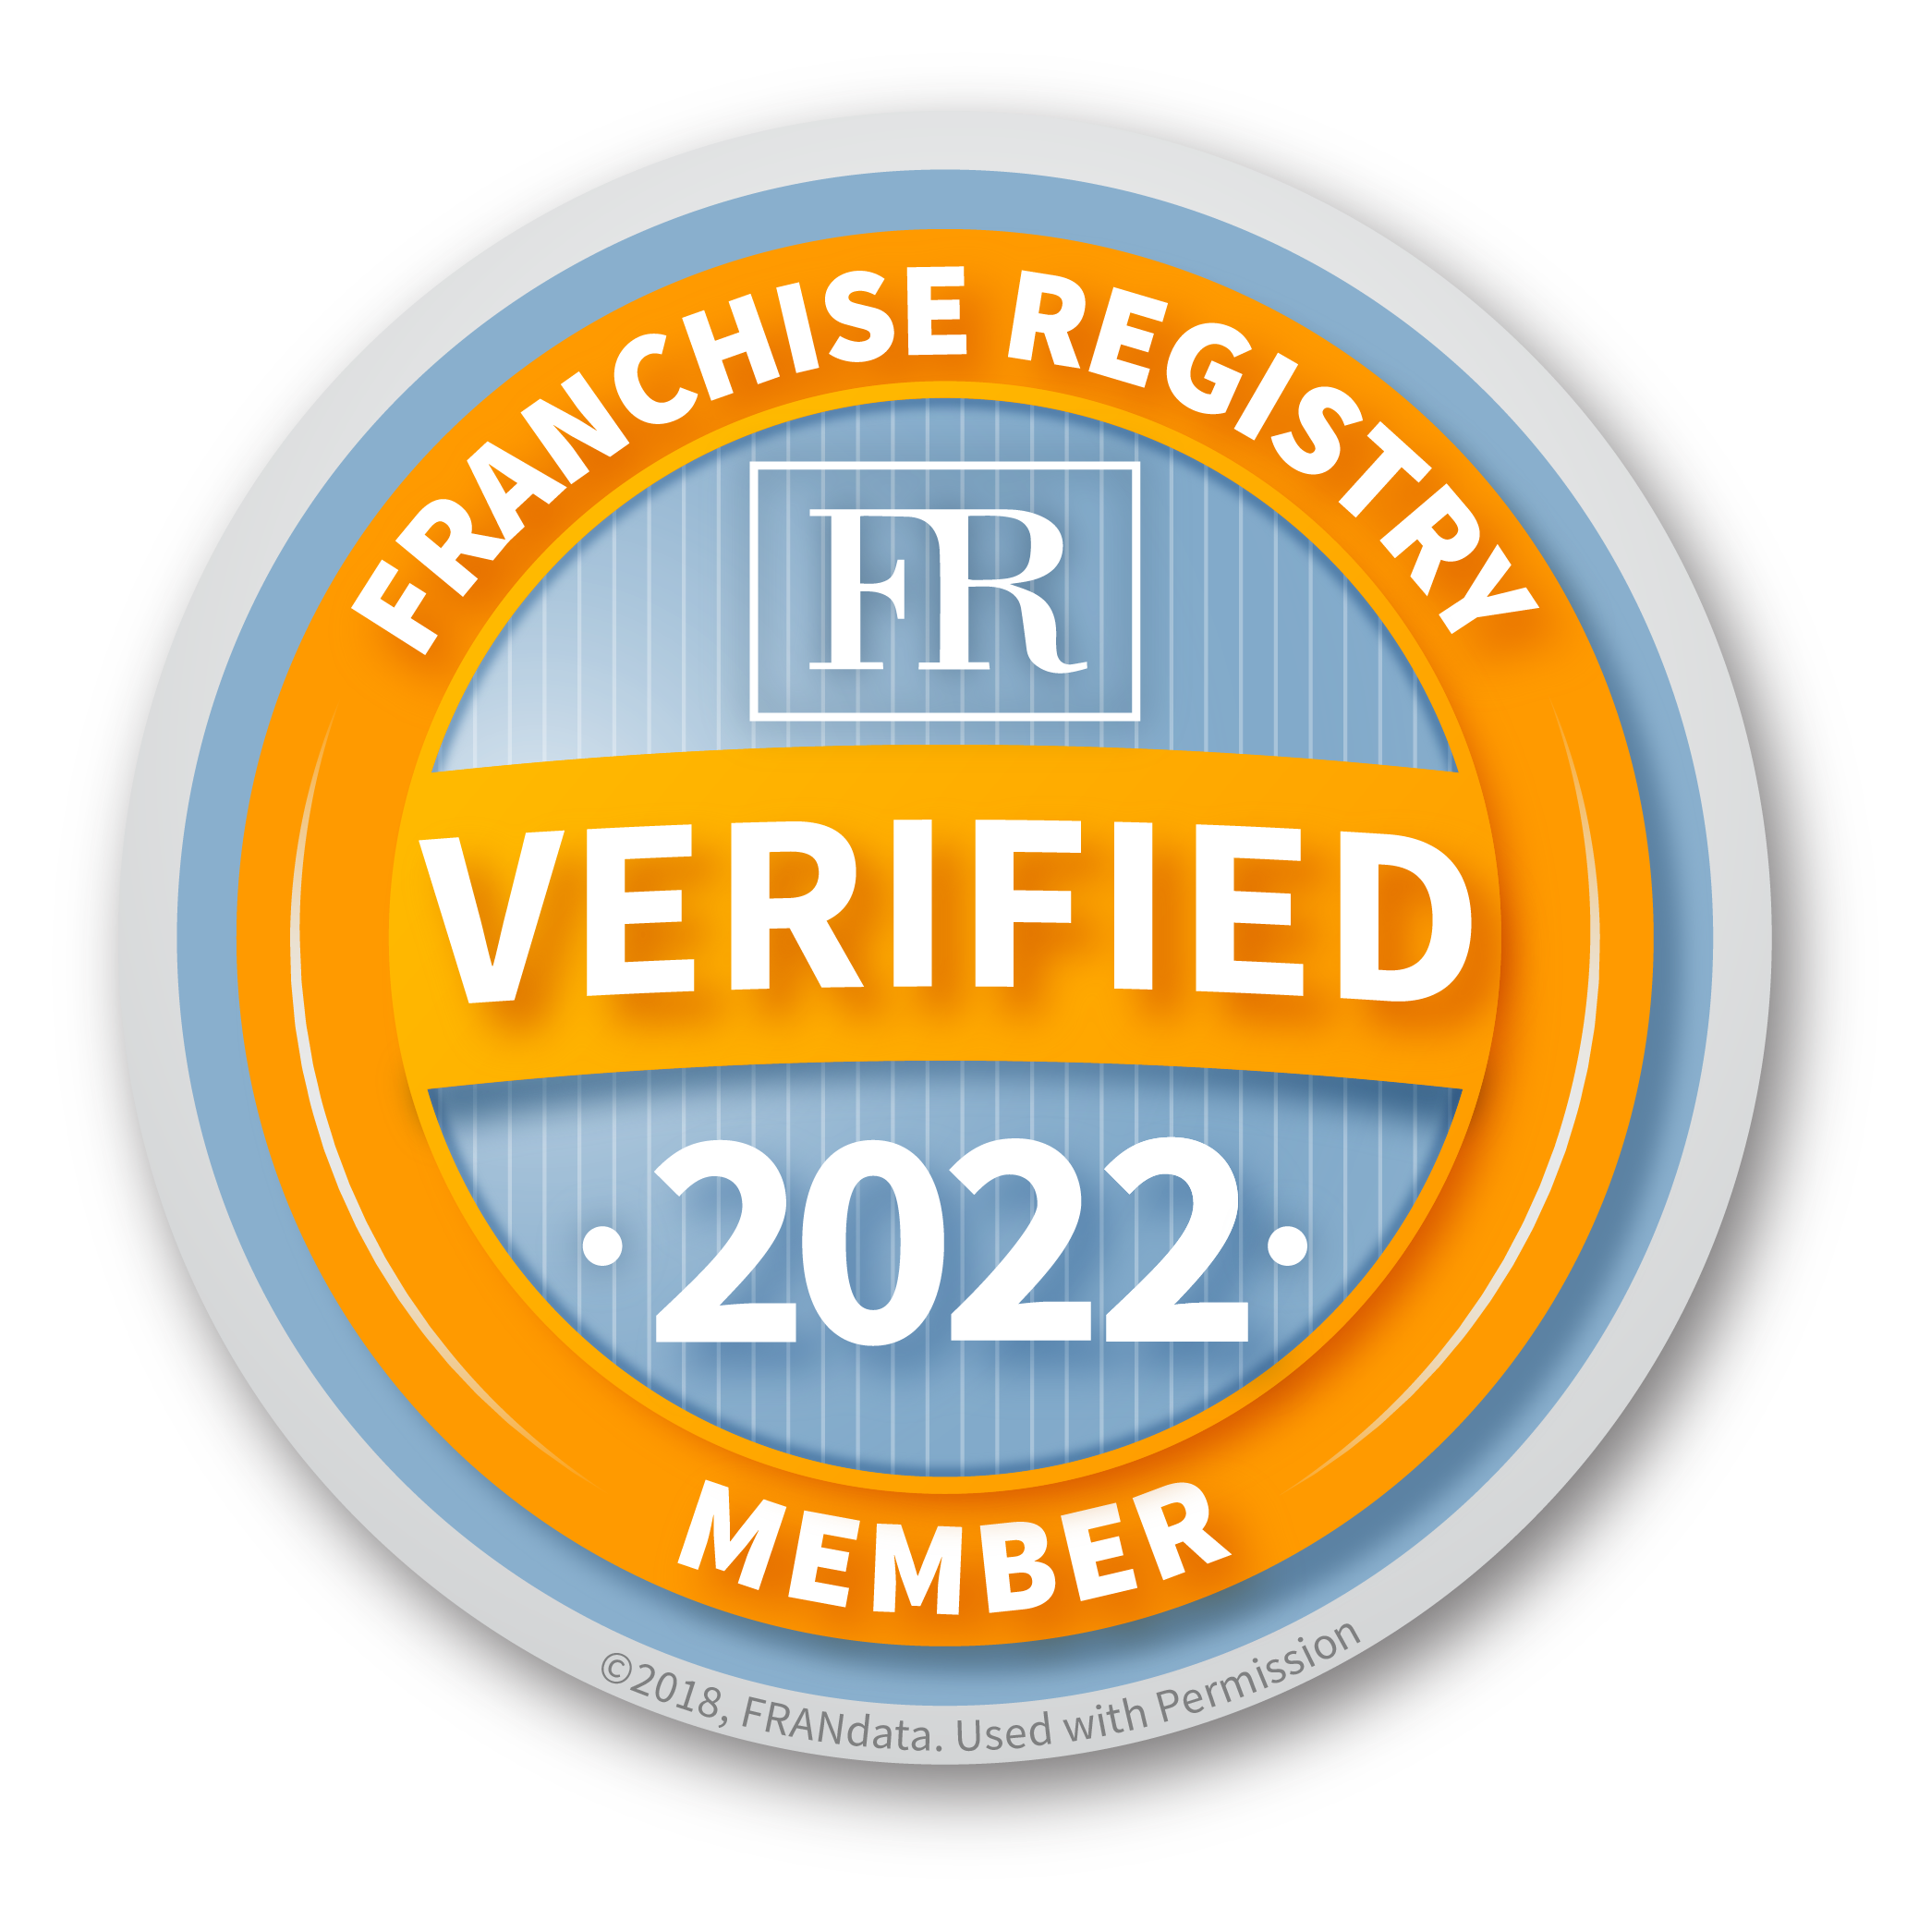 Franchise Registry Verified 2022 Member